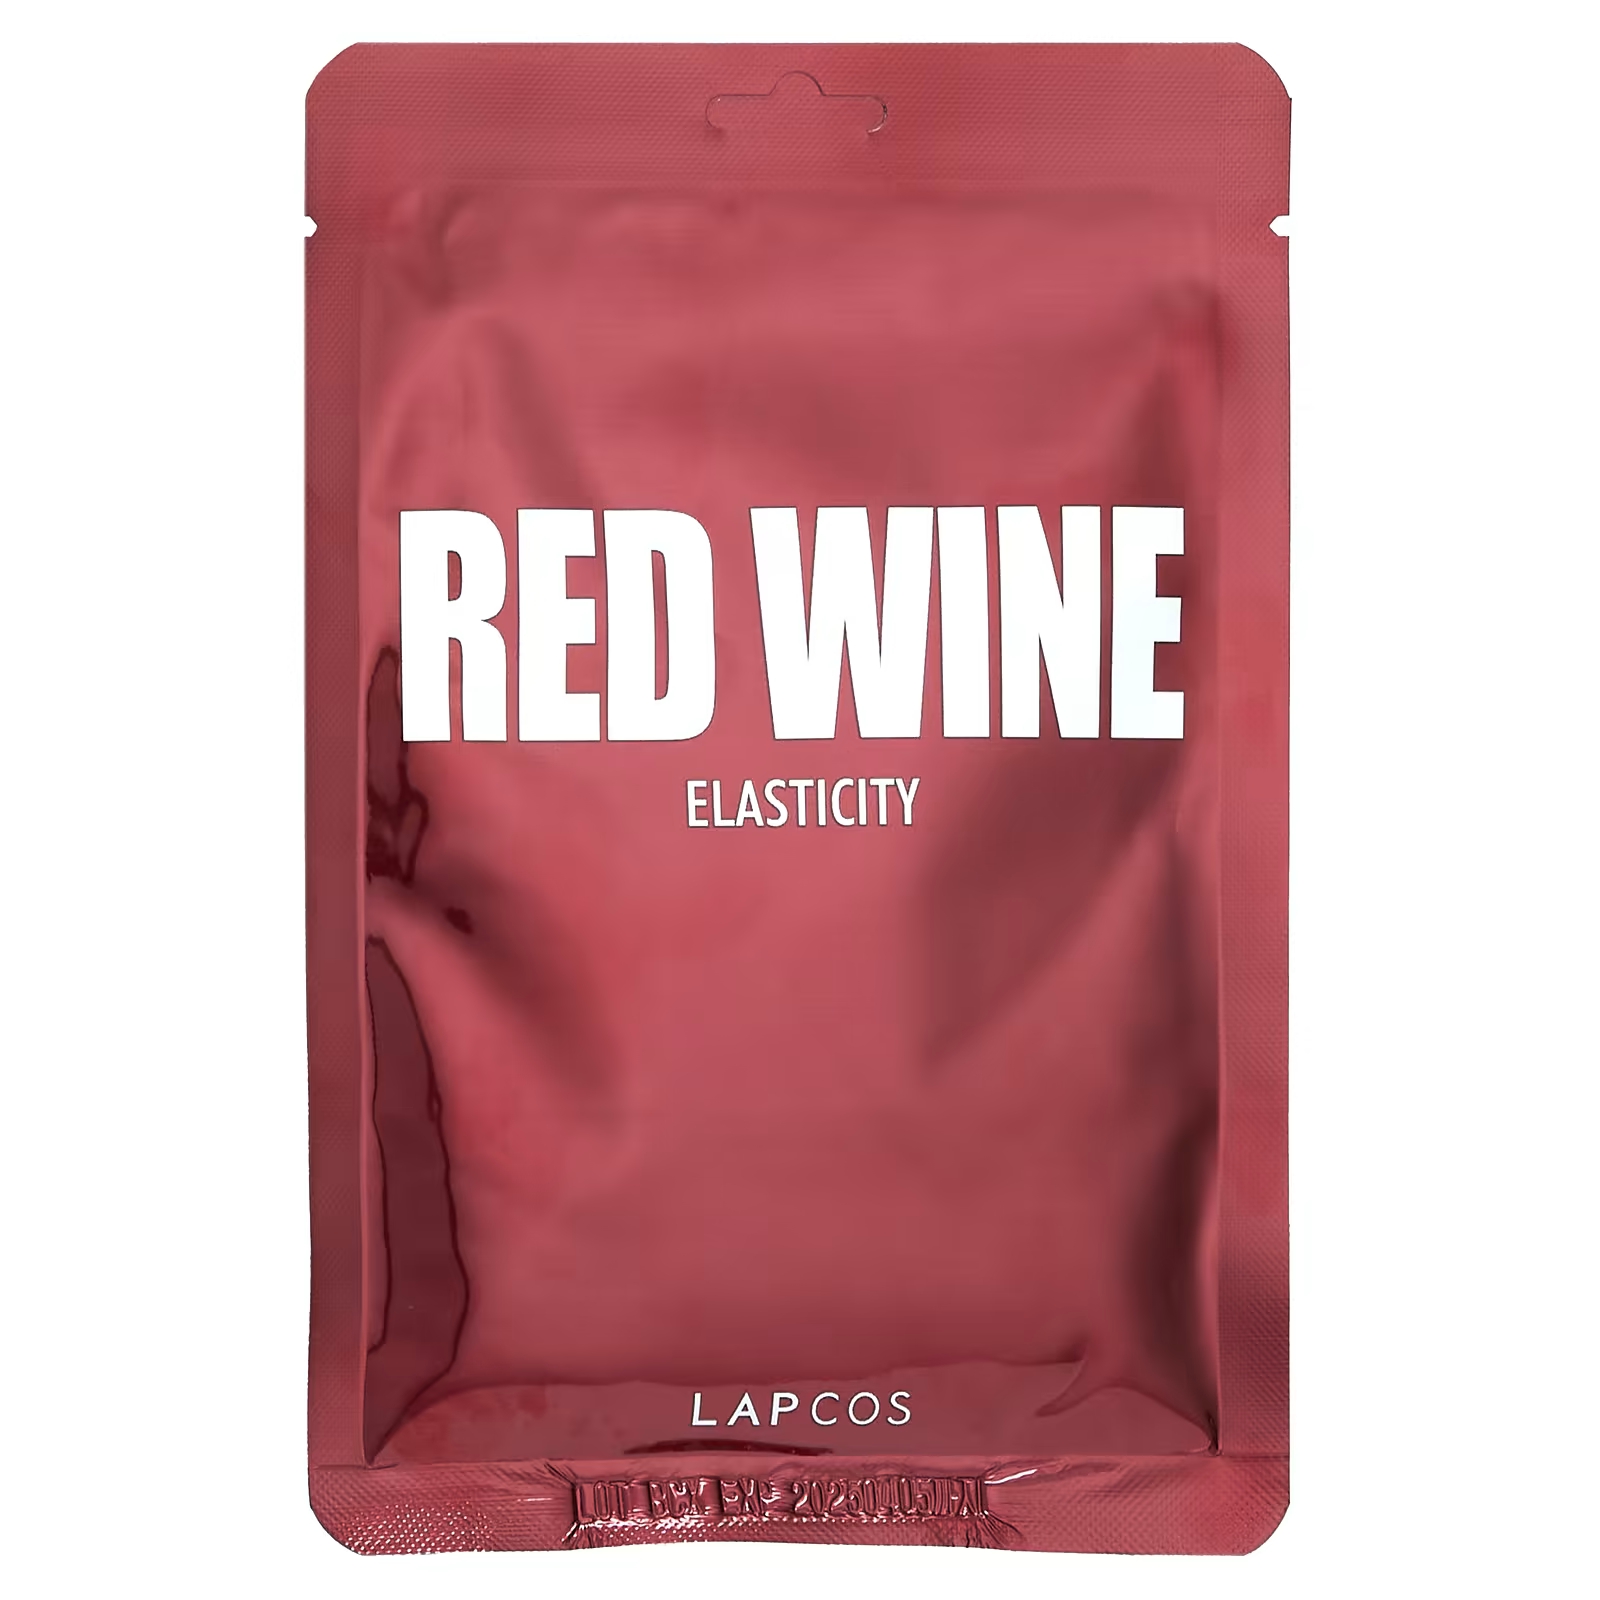 Lapcos Red Wine Beauty Тканевая маска «Эластичность», 1 лист, 1,01 жидкая унция (30 мл)